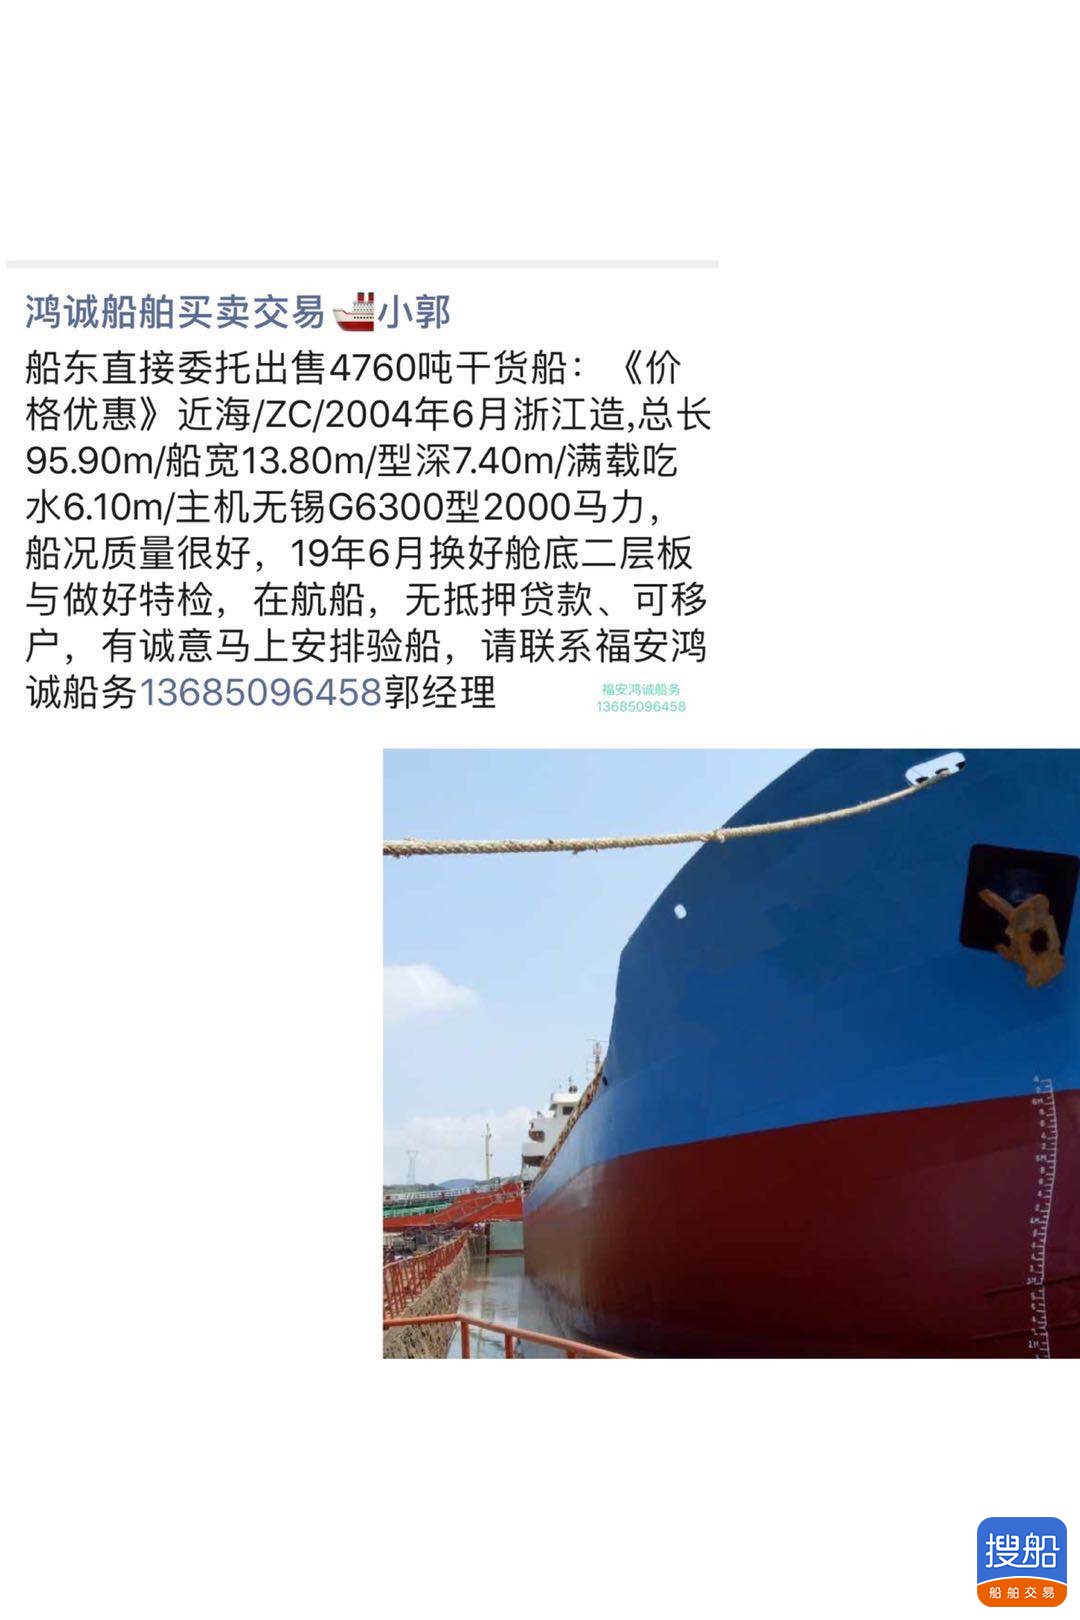 出售4760吨干货船